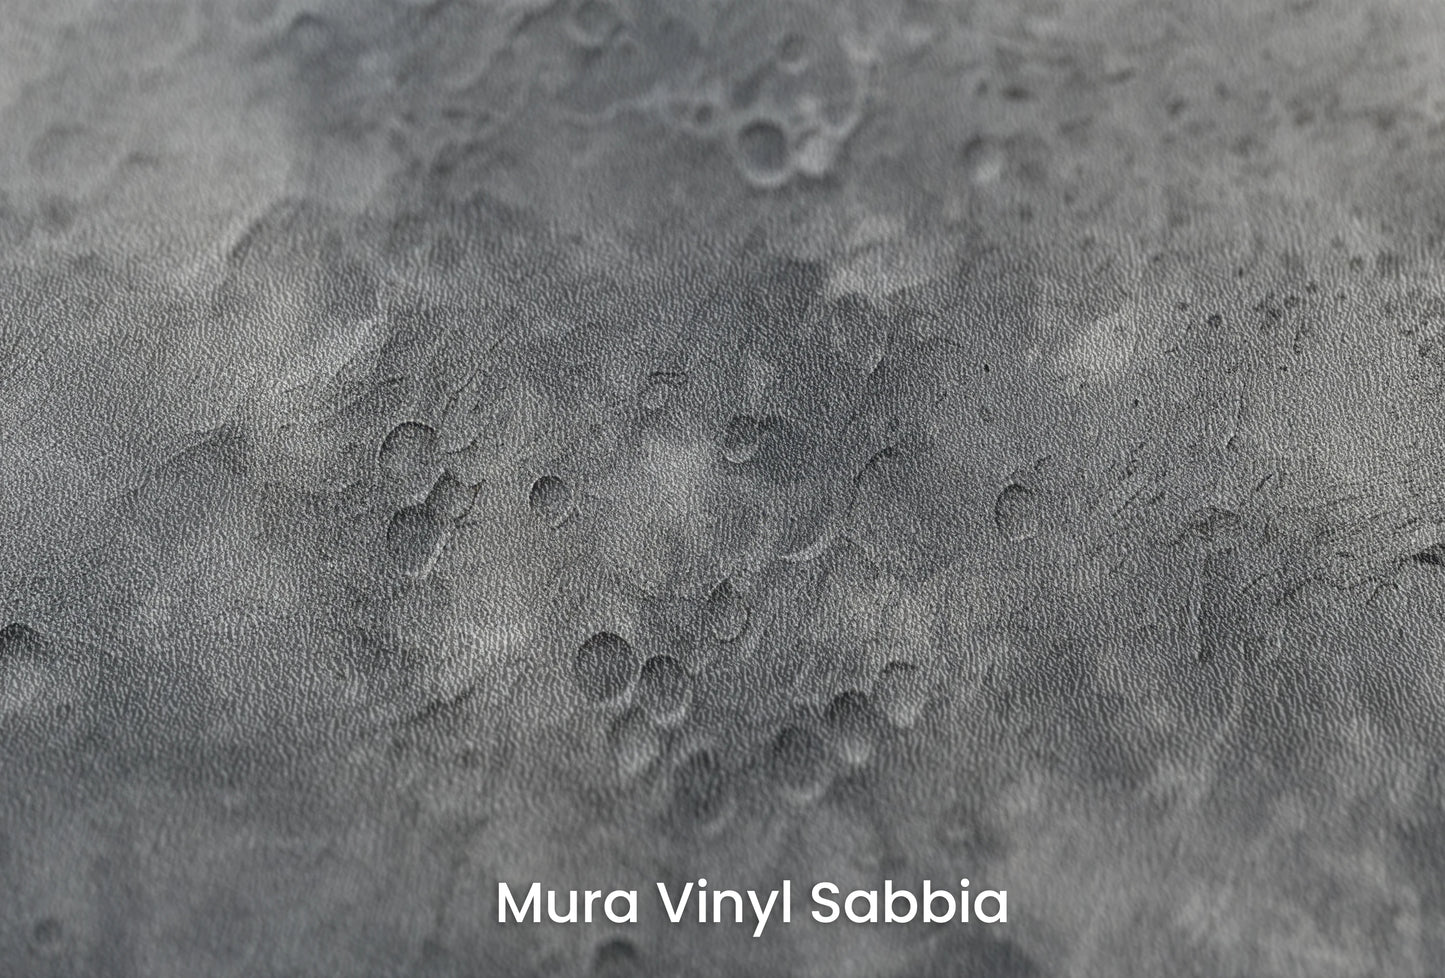 Zbliżenie na artystyczną fototapetę o nazwie Moon's Geography na podłożu Mura Vinyl Sabbia struktura grubego ziarna piasku.